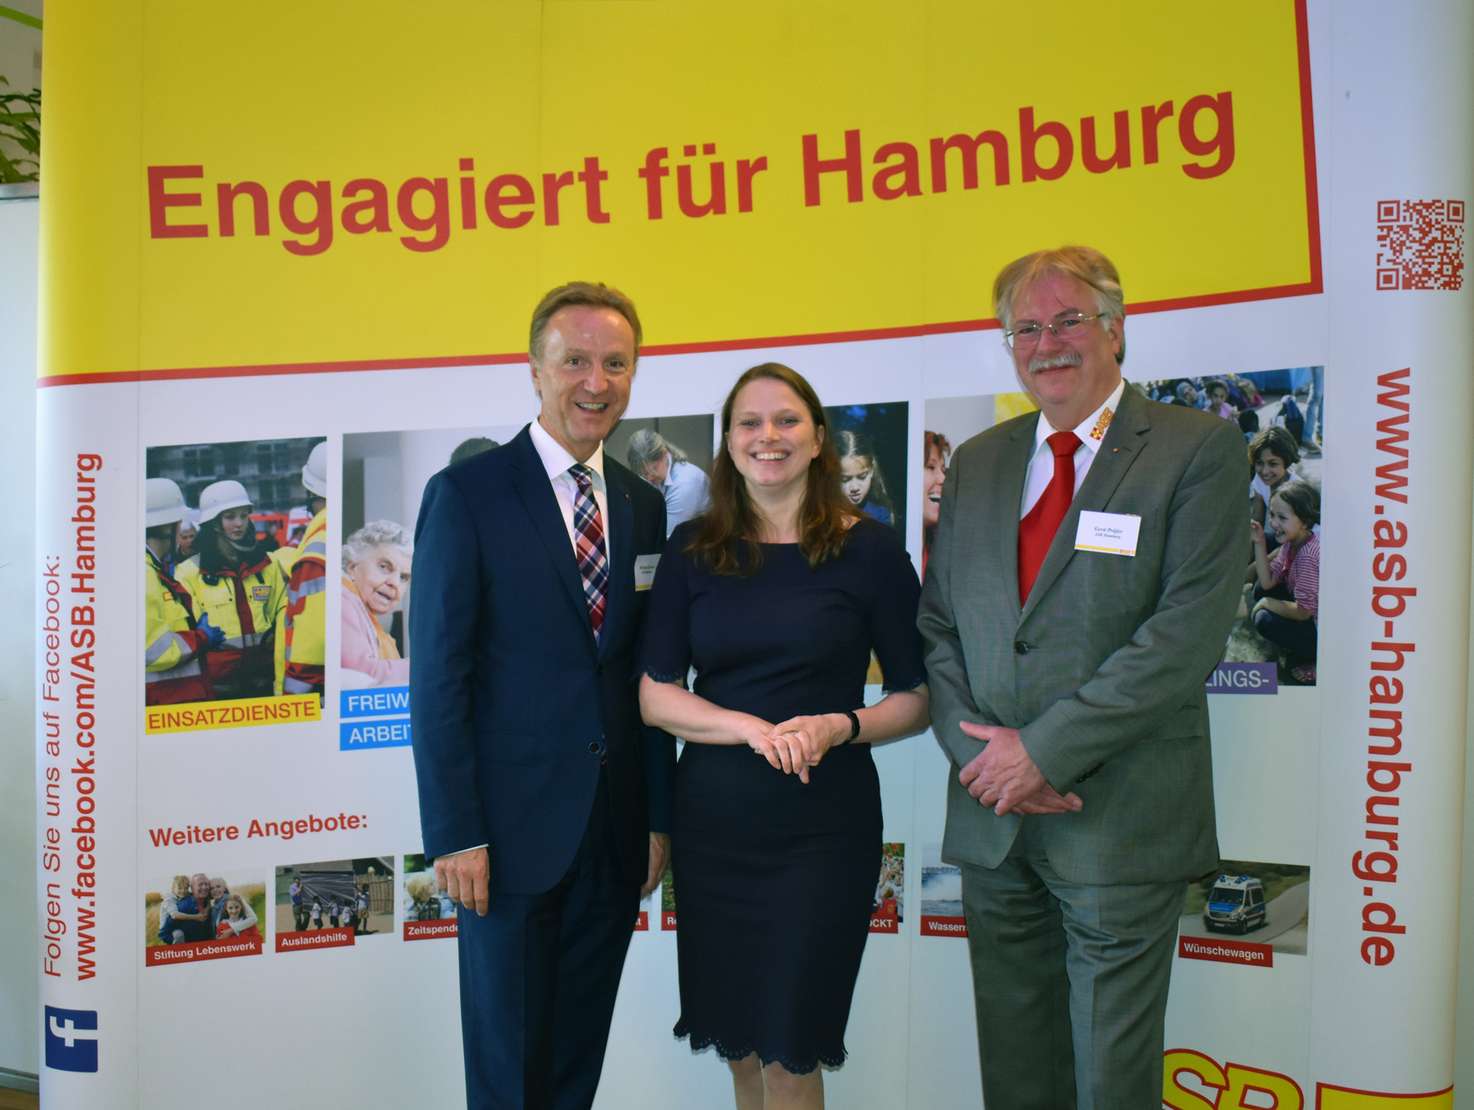 Der stellvertretende Landesvorsitzende des ASB Hamburg, Gerd Prüfer (links), und der Geschäftsführer Michael Sander (rechts), freuten sich über den Besuch von Sozialministerin Dr. Melanie Leonhard auf dem diesjährigen ASB-Sommerfest. Foto: ASB Hamburg / P. Witt.